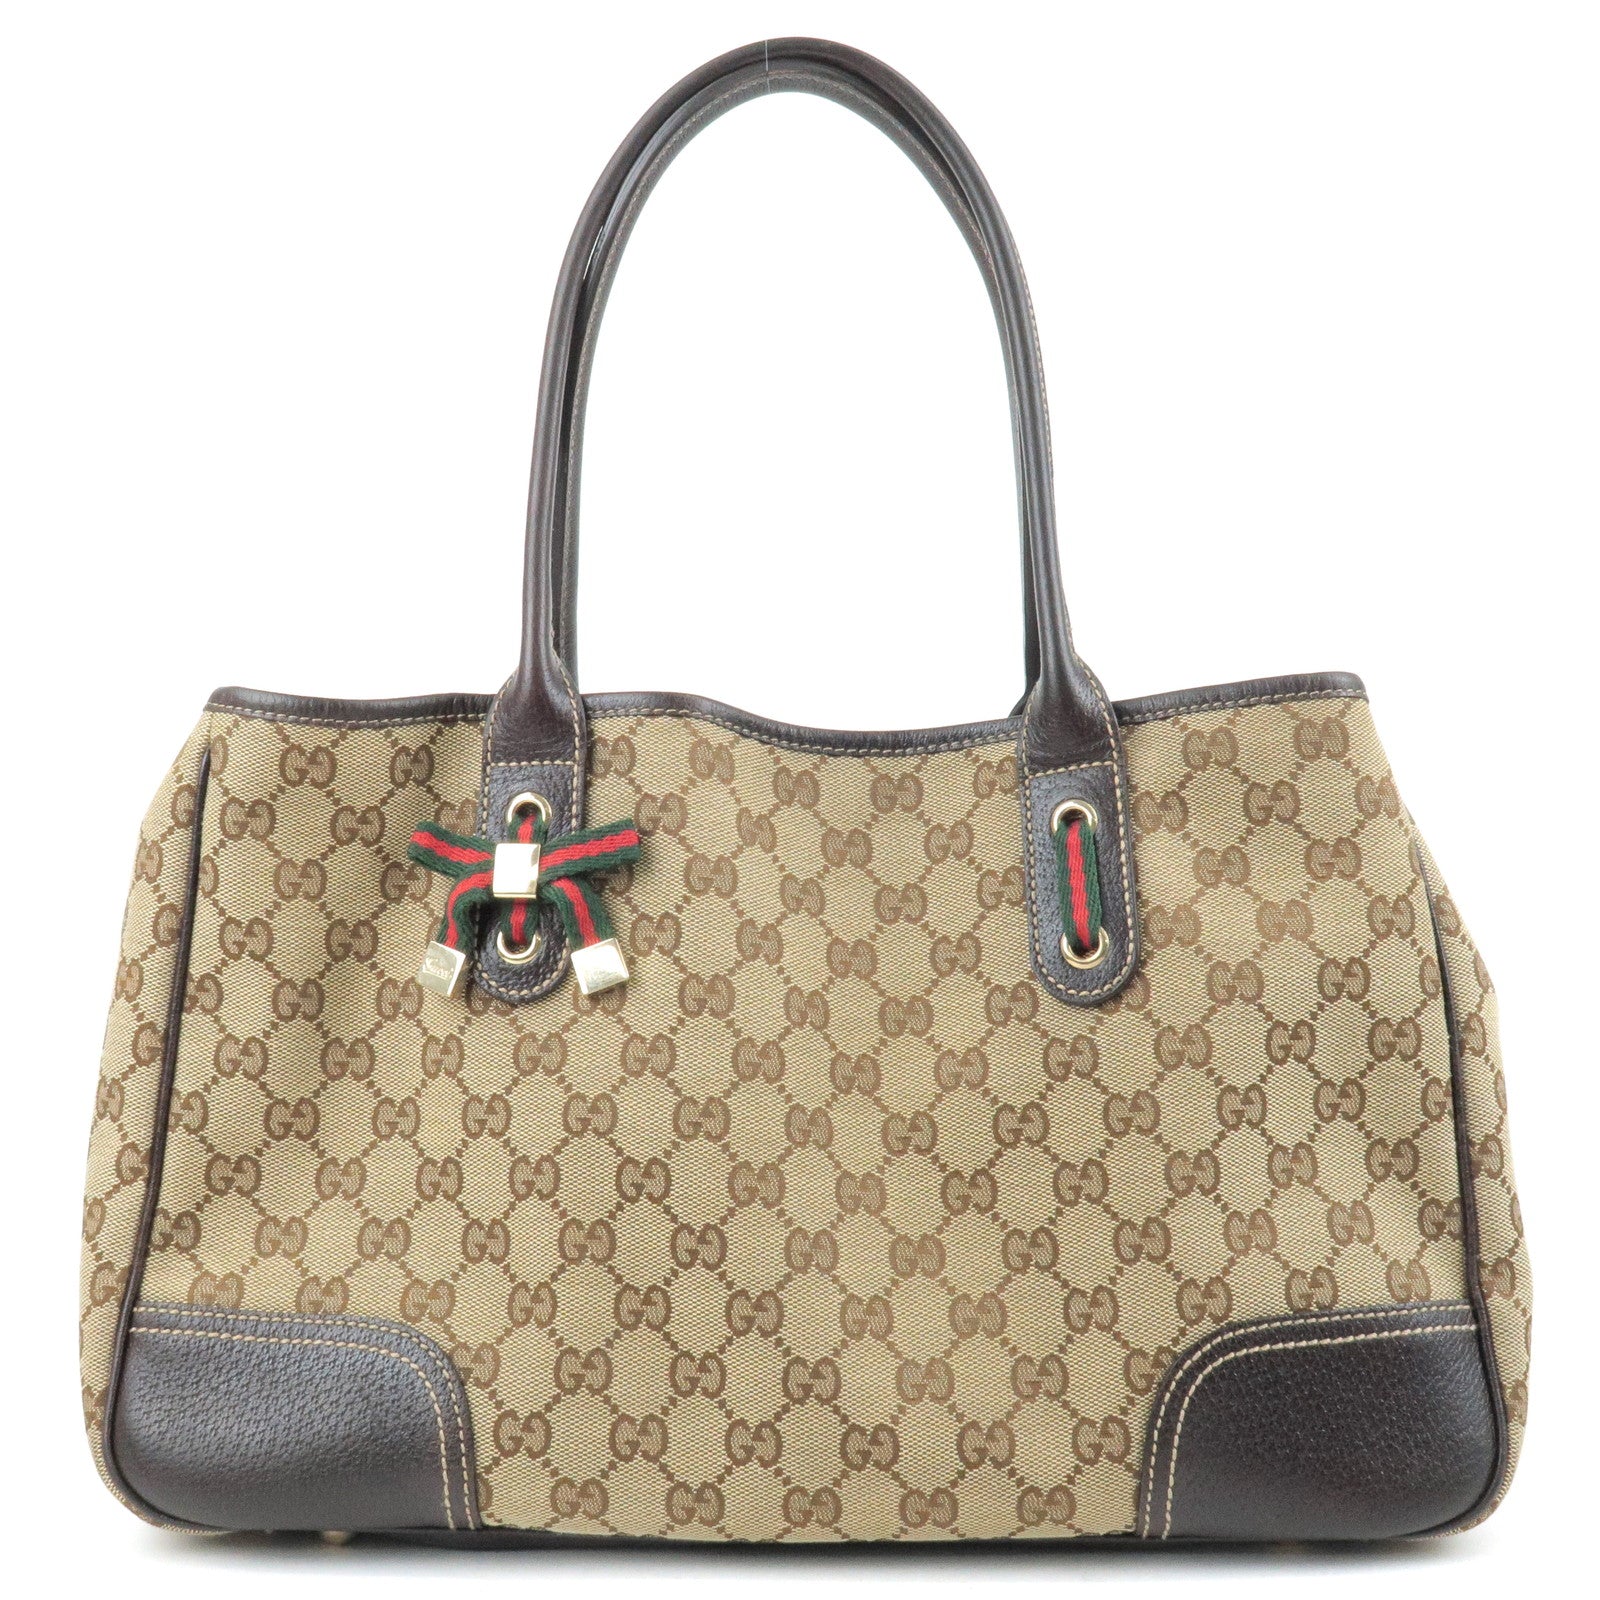 Gucci Princy GG Canvas Hobo Bag on SALE